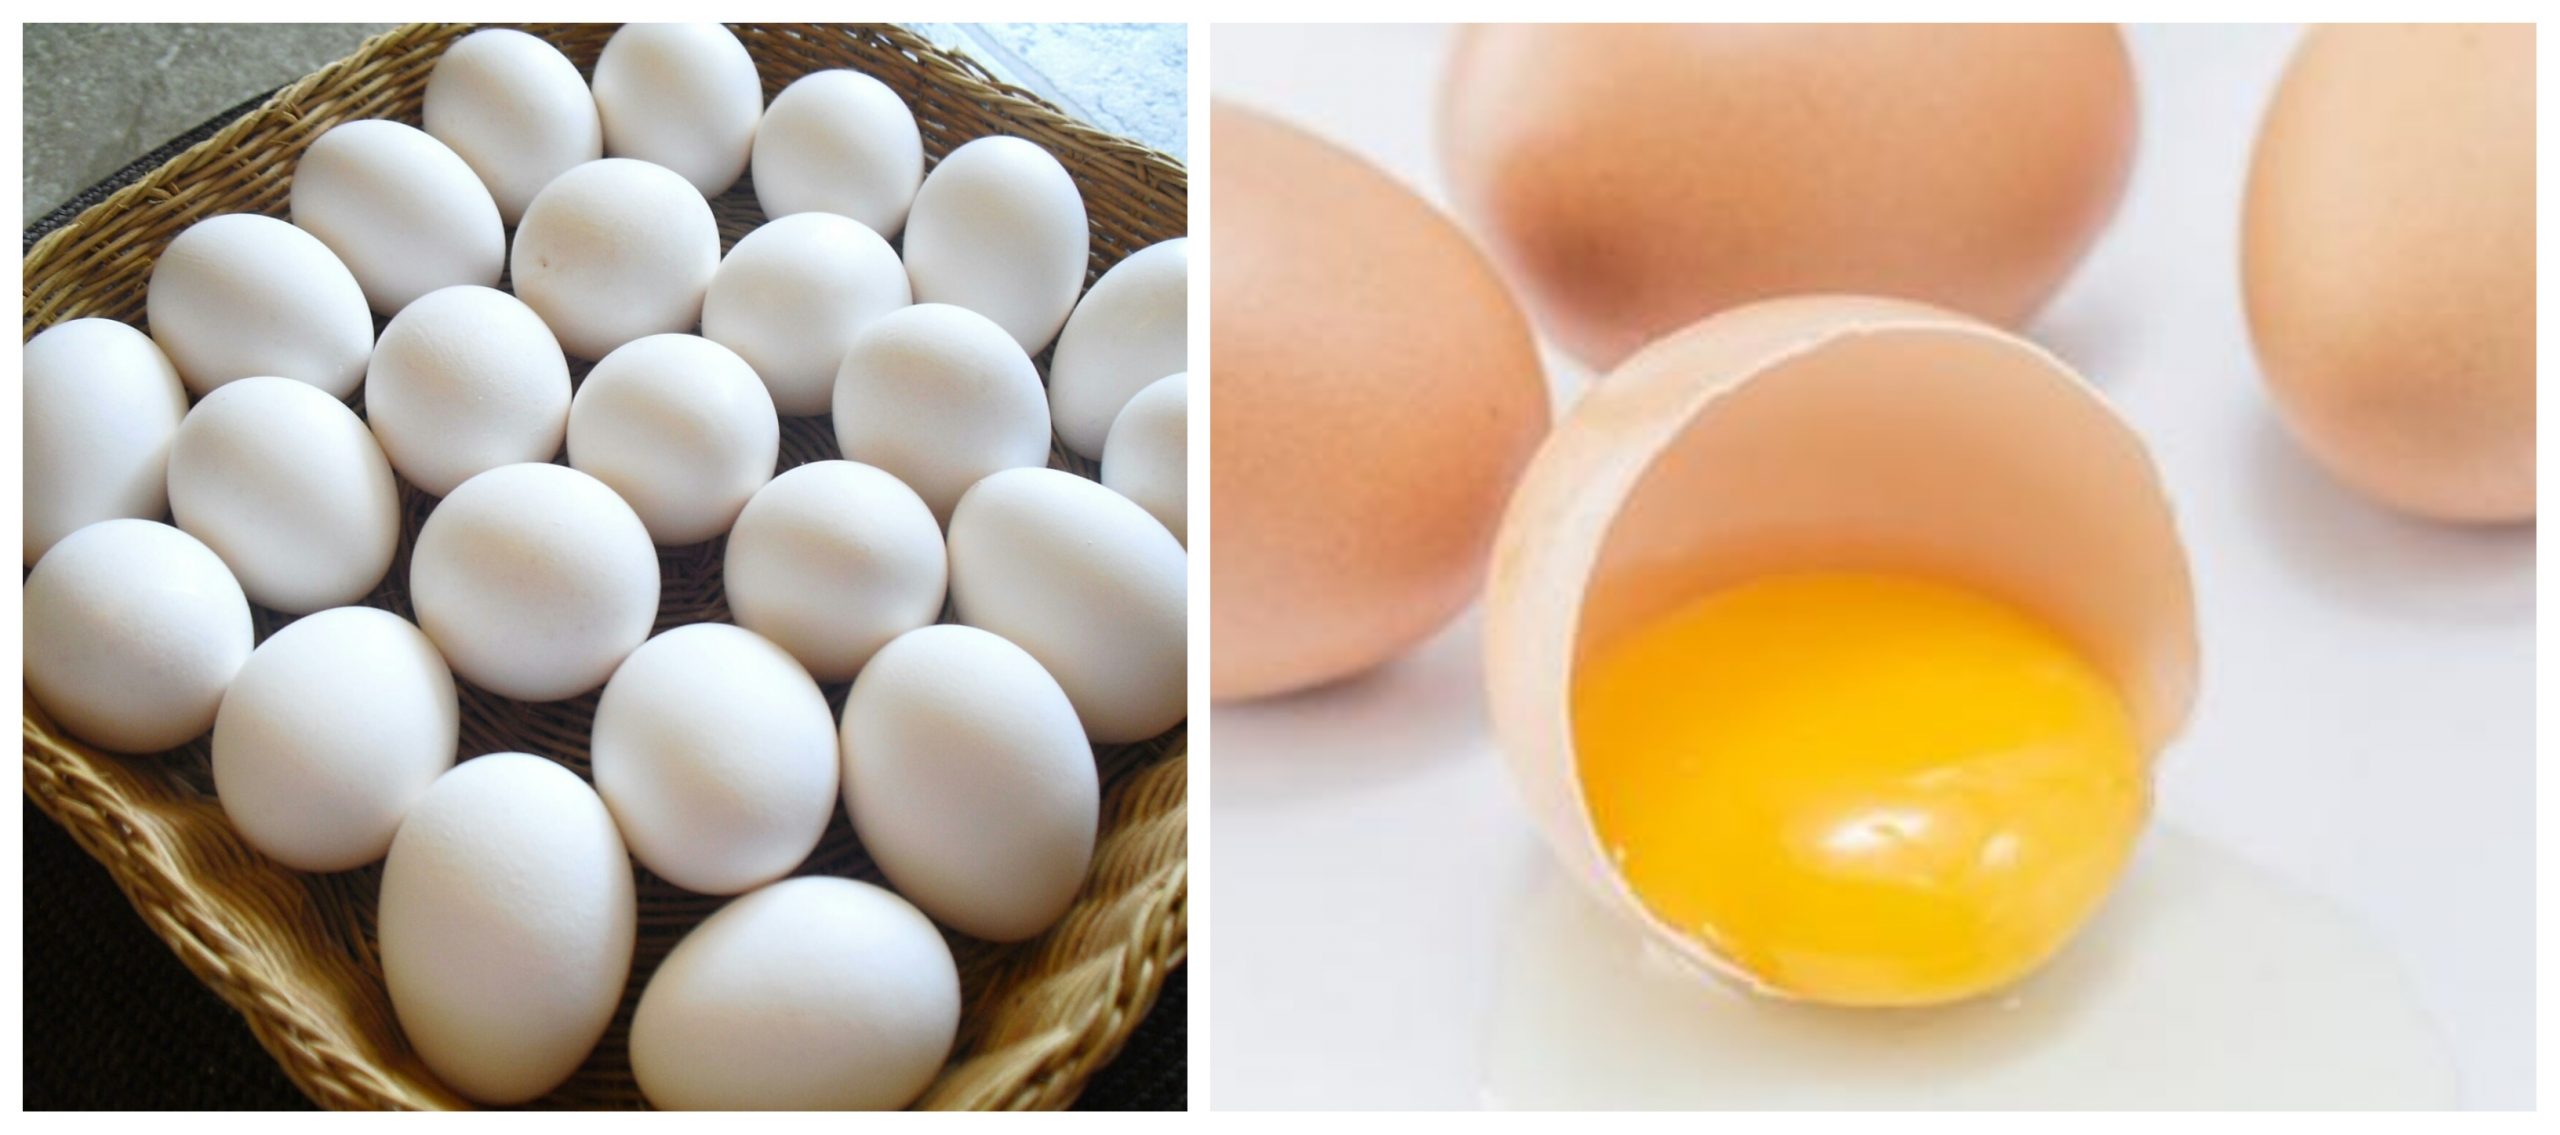 البيض يمدك بالعناصر الغذائية